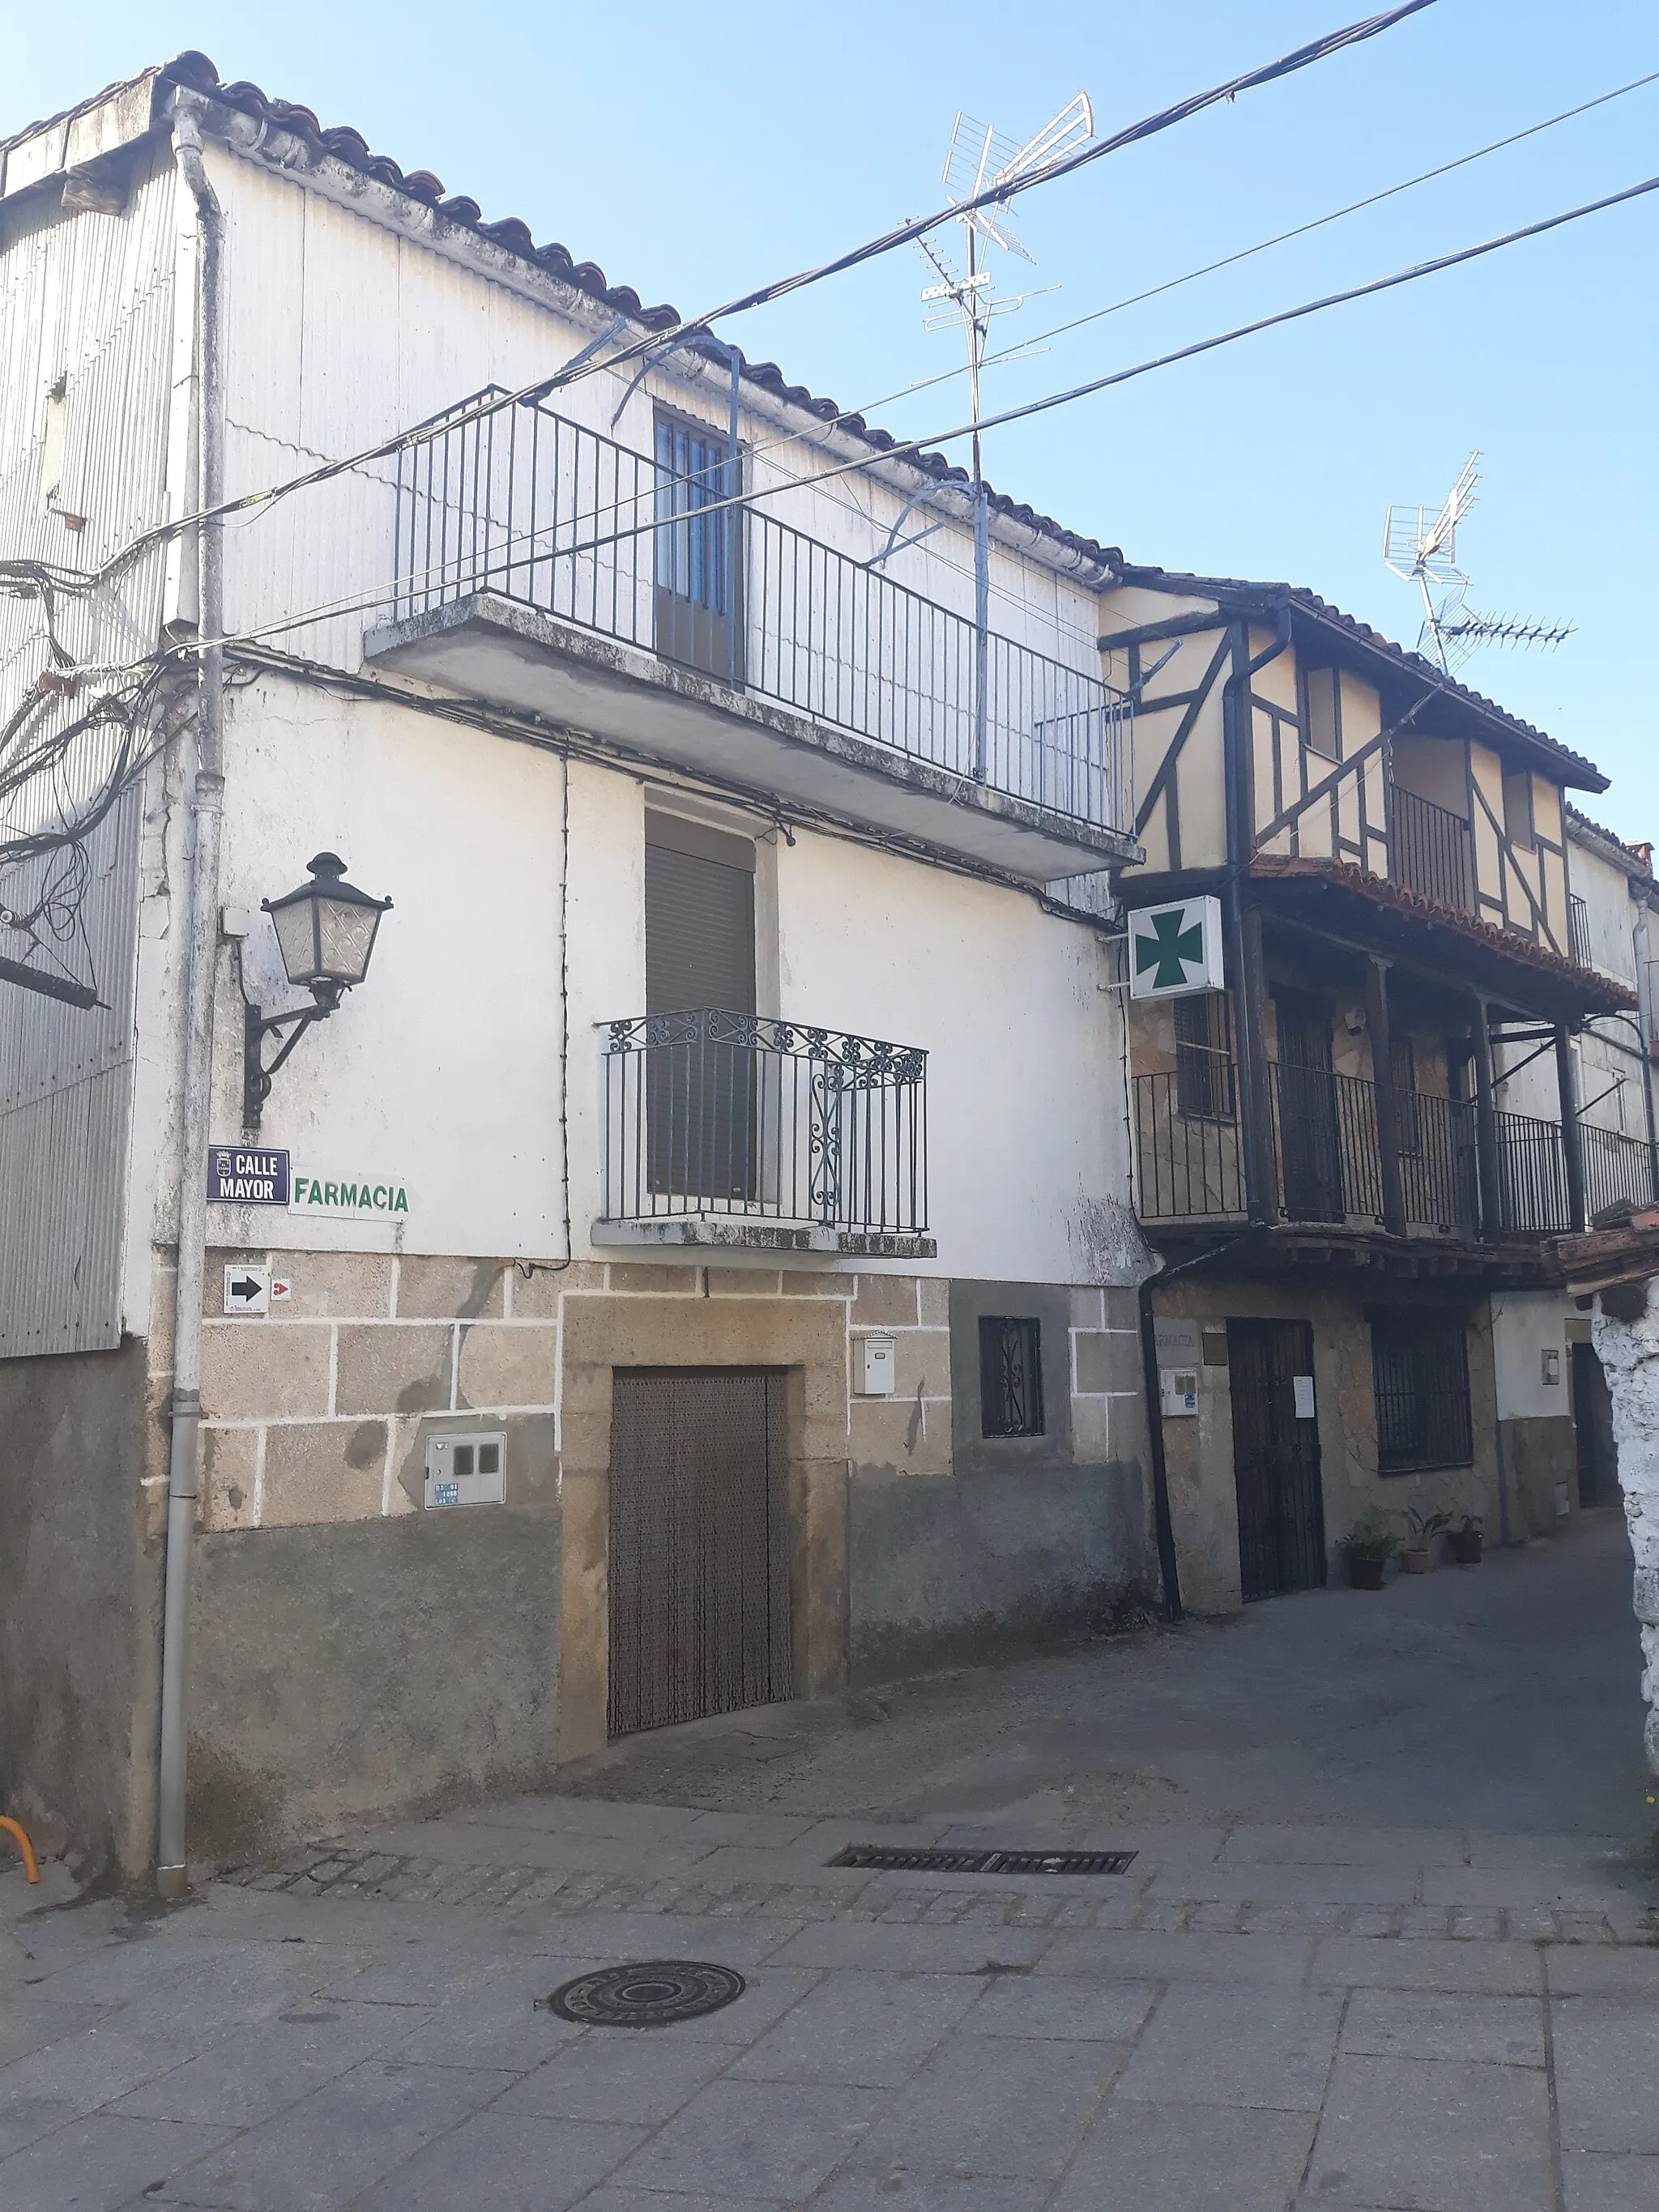 Photo showing: Edificios de la Farmacia y una casa tradicional serrana de El Cerro, Salamanca